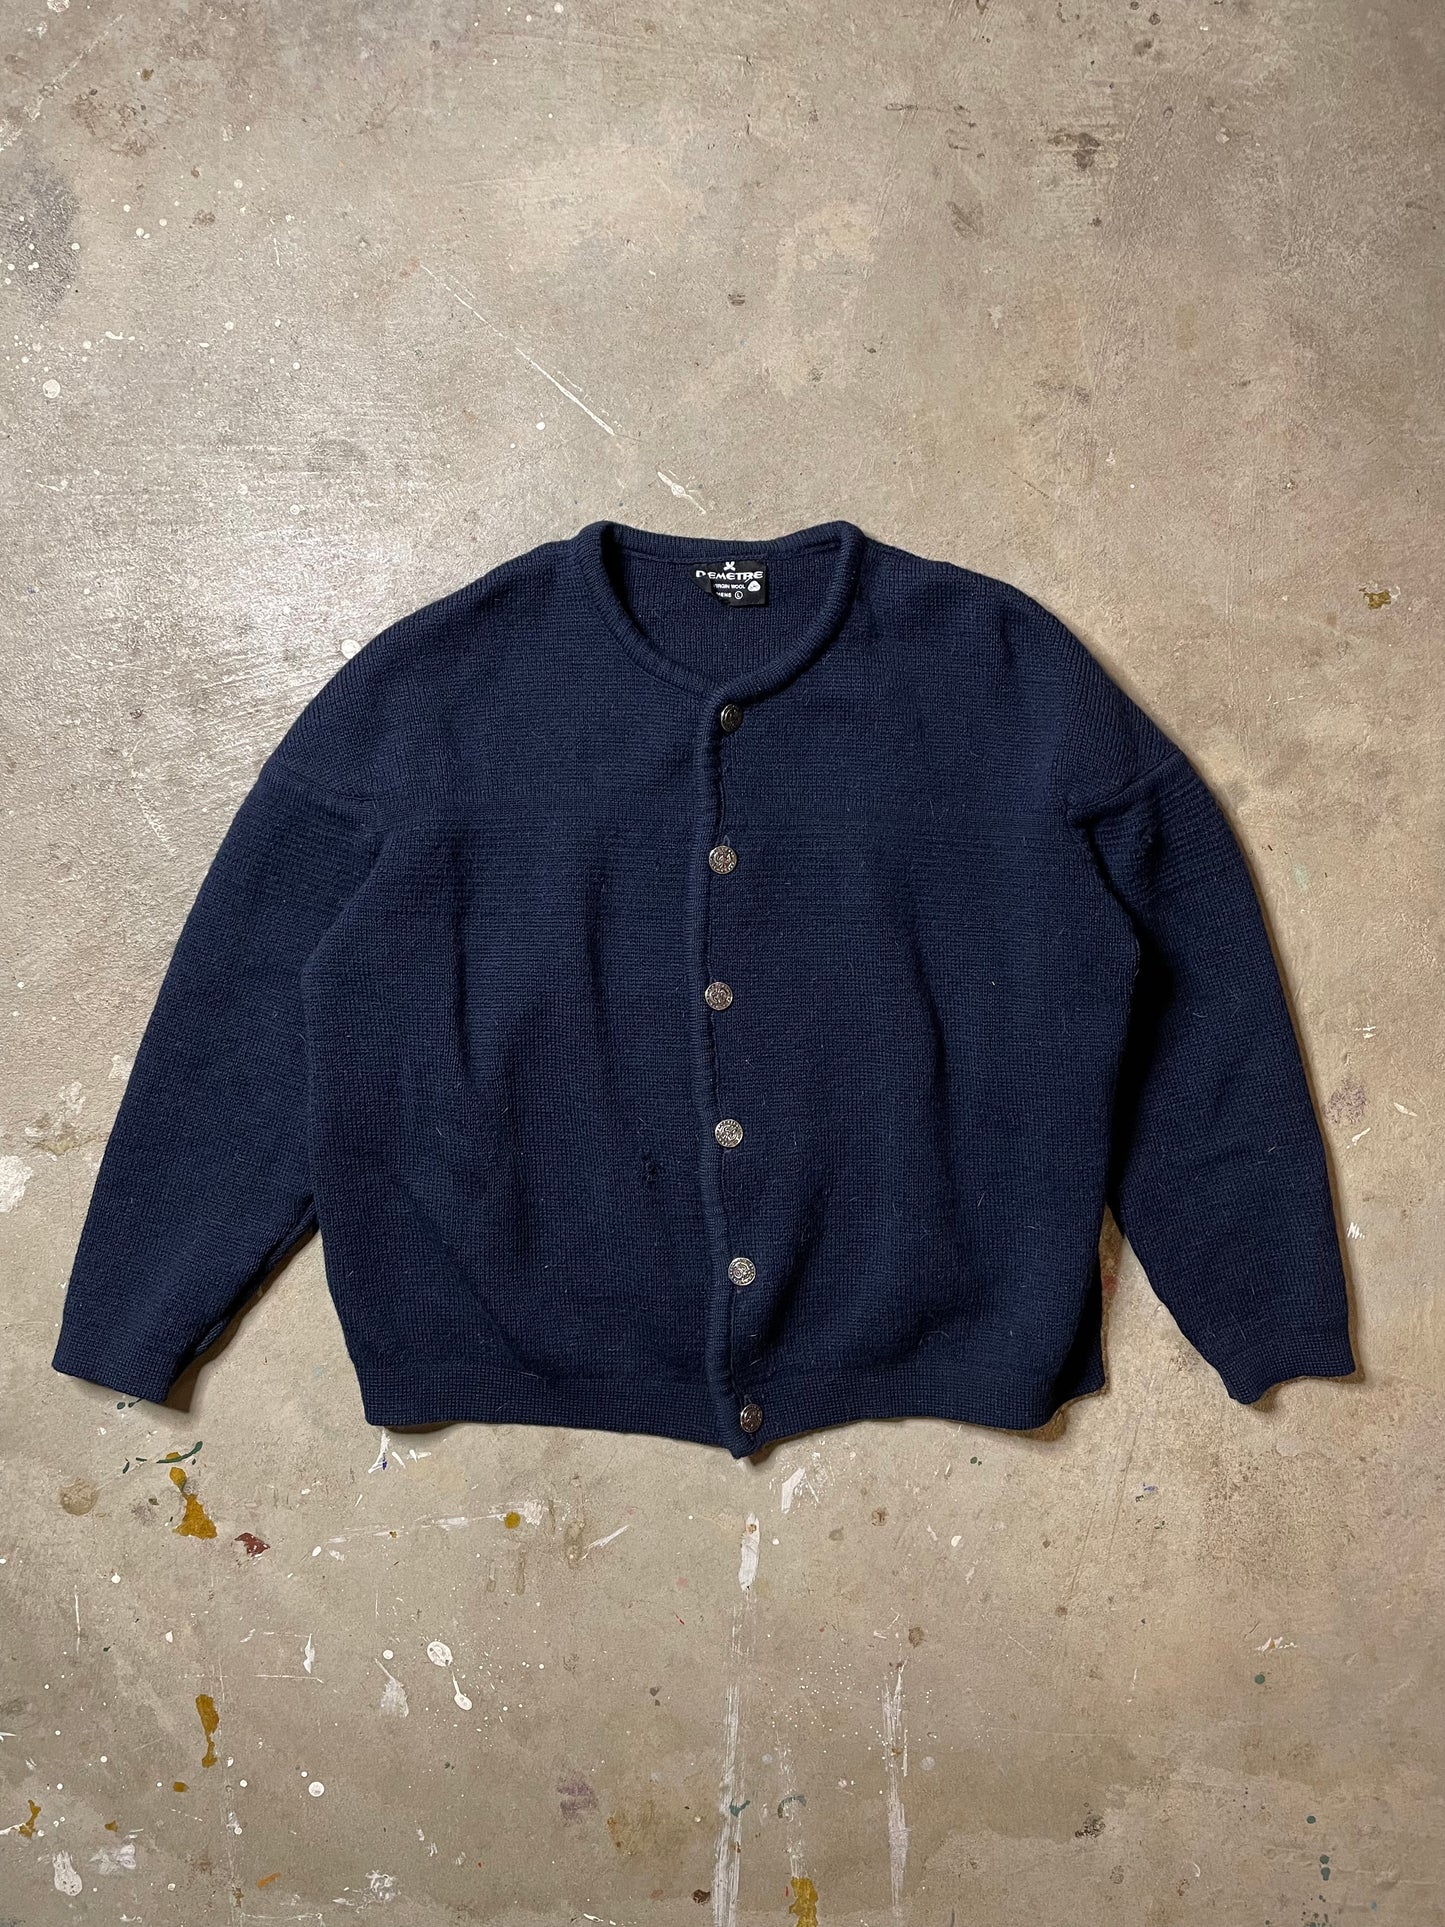 1960s Demetre Wool Sweater